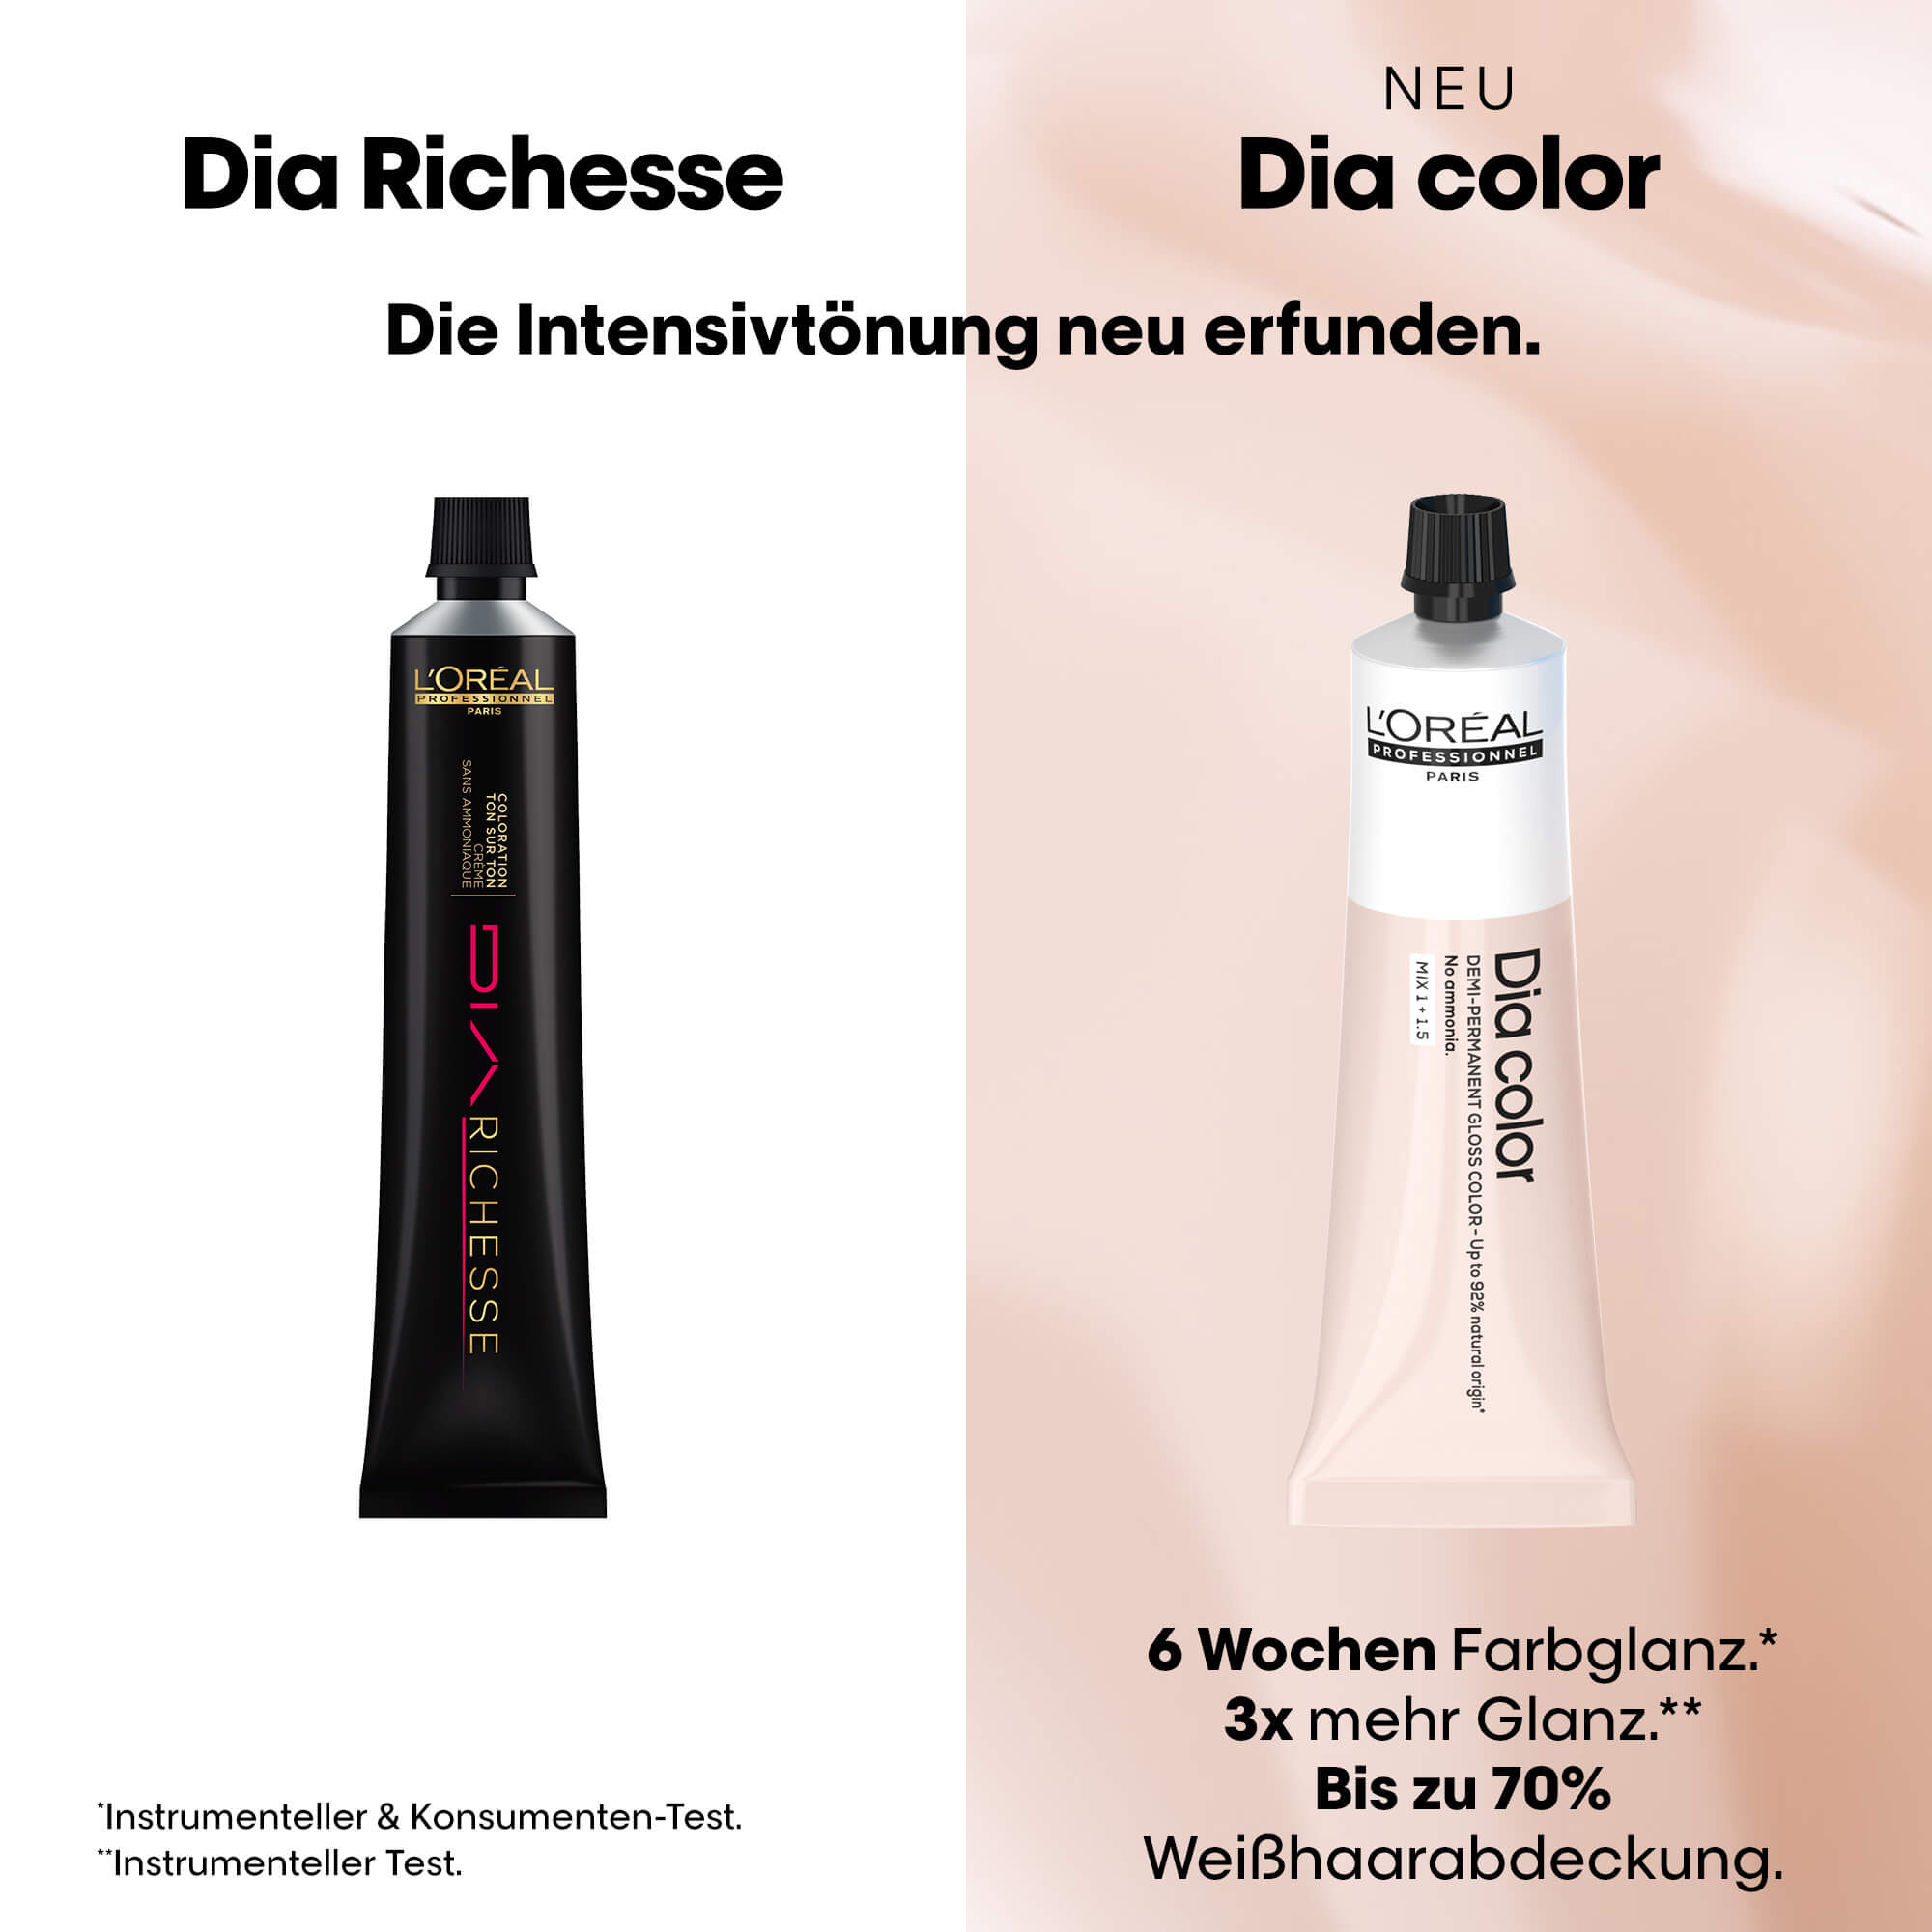 L'Oréal Dia Richesse wird zu Dia color